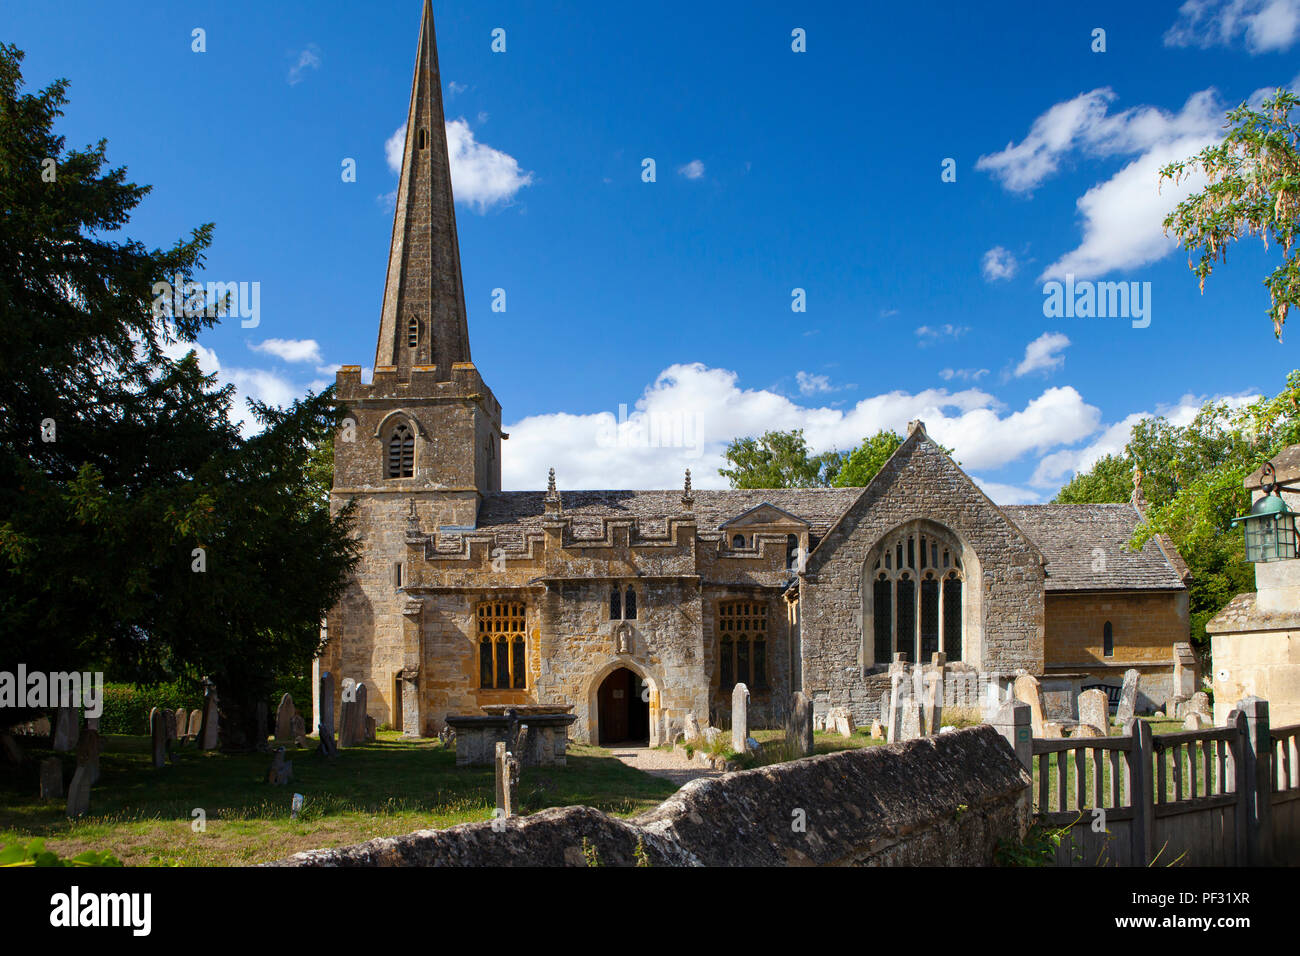 Stanton, Regno Unito - 8 Agosto 2018: La Chiesa di San Michele e Tutti gli angeli in Stanton in Cotswold district of Gloucestershire.Il villaggio è costruito alm Foto Stock